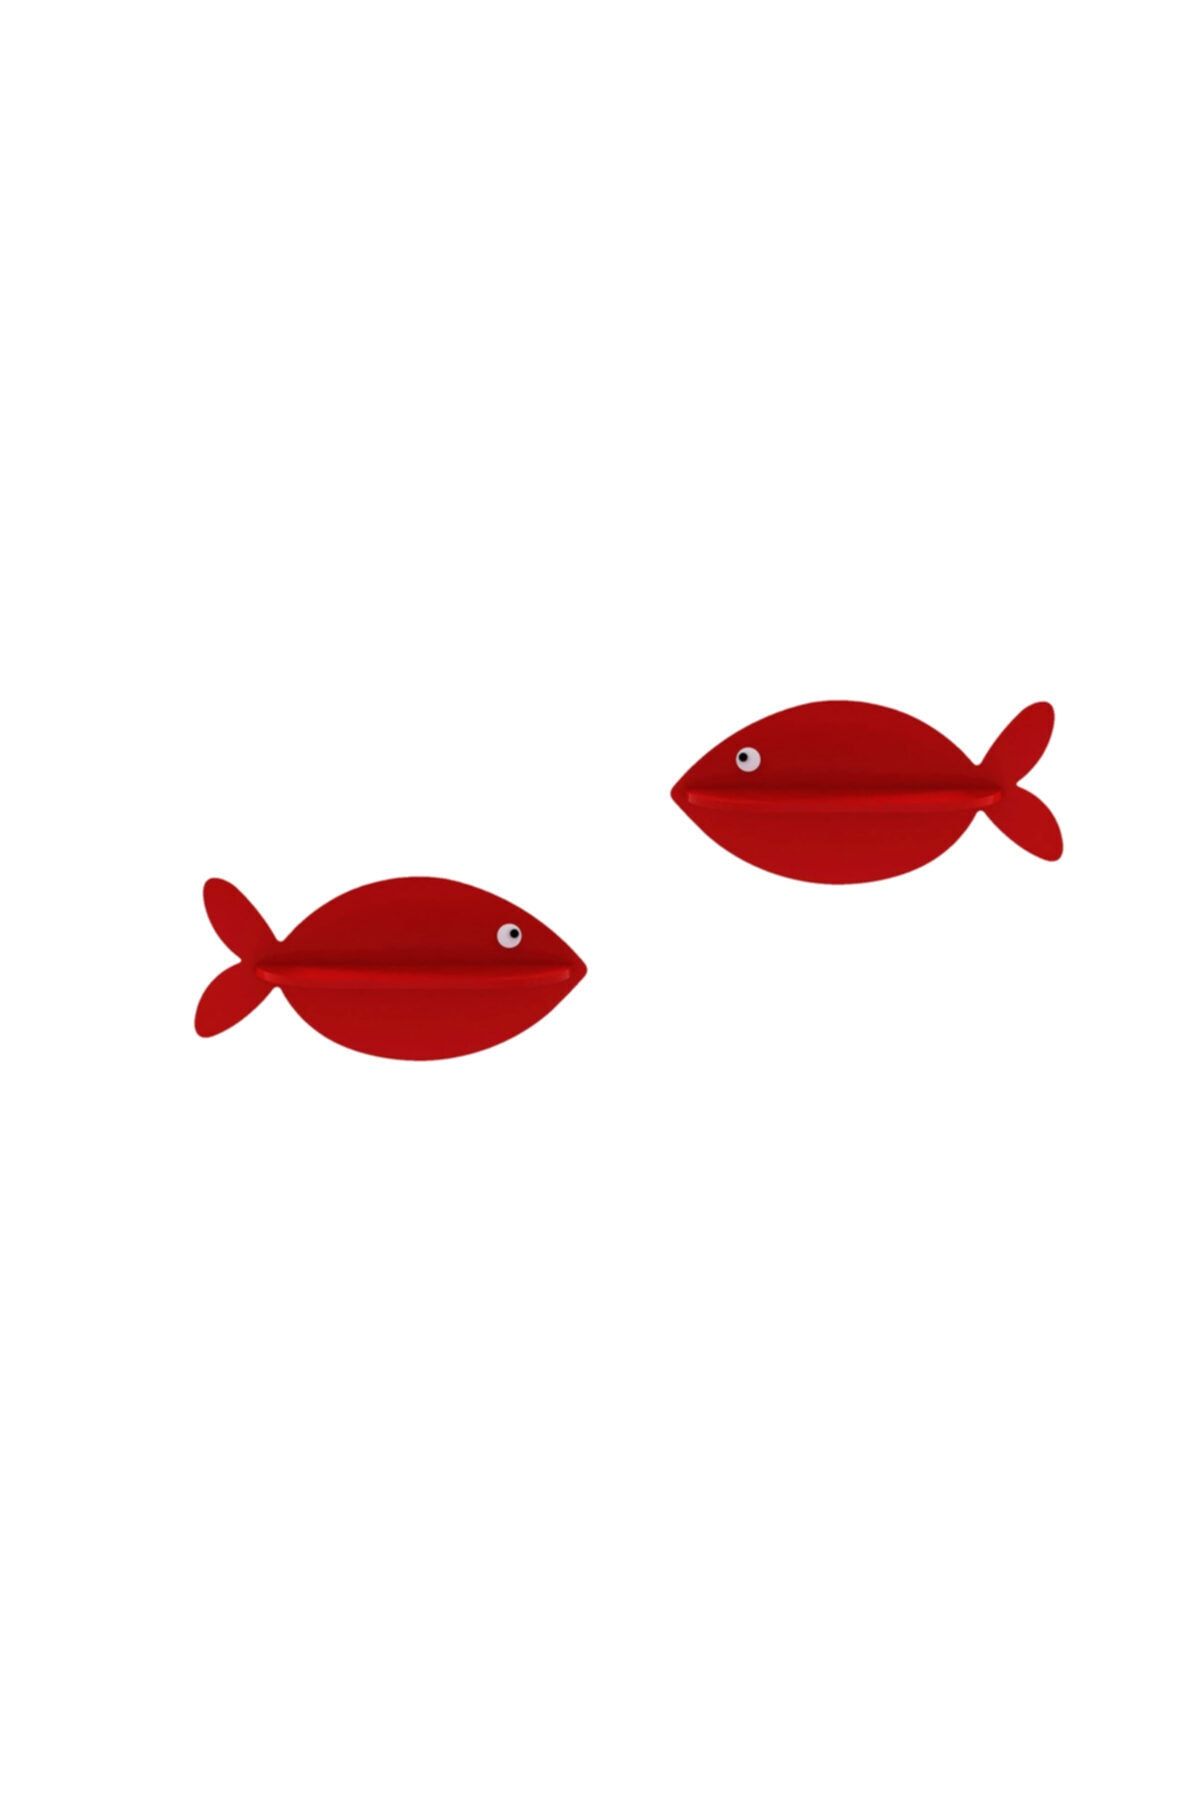 BugyBagy Kırmızı Balık Raf Çocuk Odası Rafı Dekoratif Kırmızı Balık Dekor Bebek Odası Dekorasyon 2 Adet